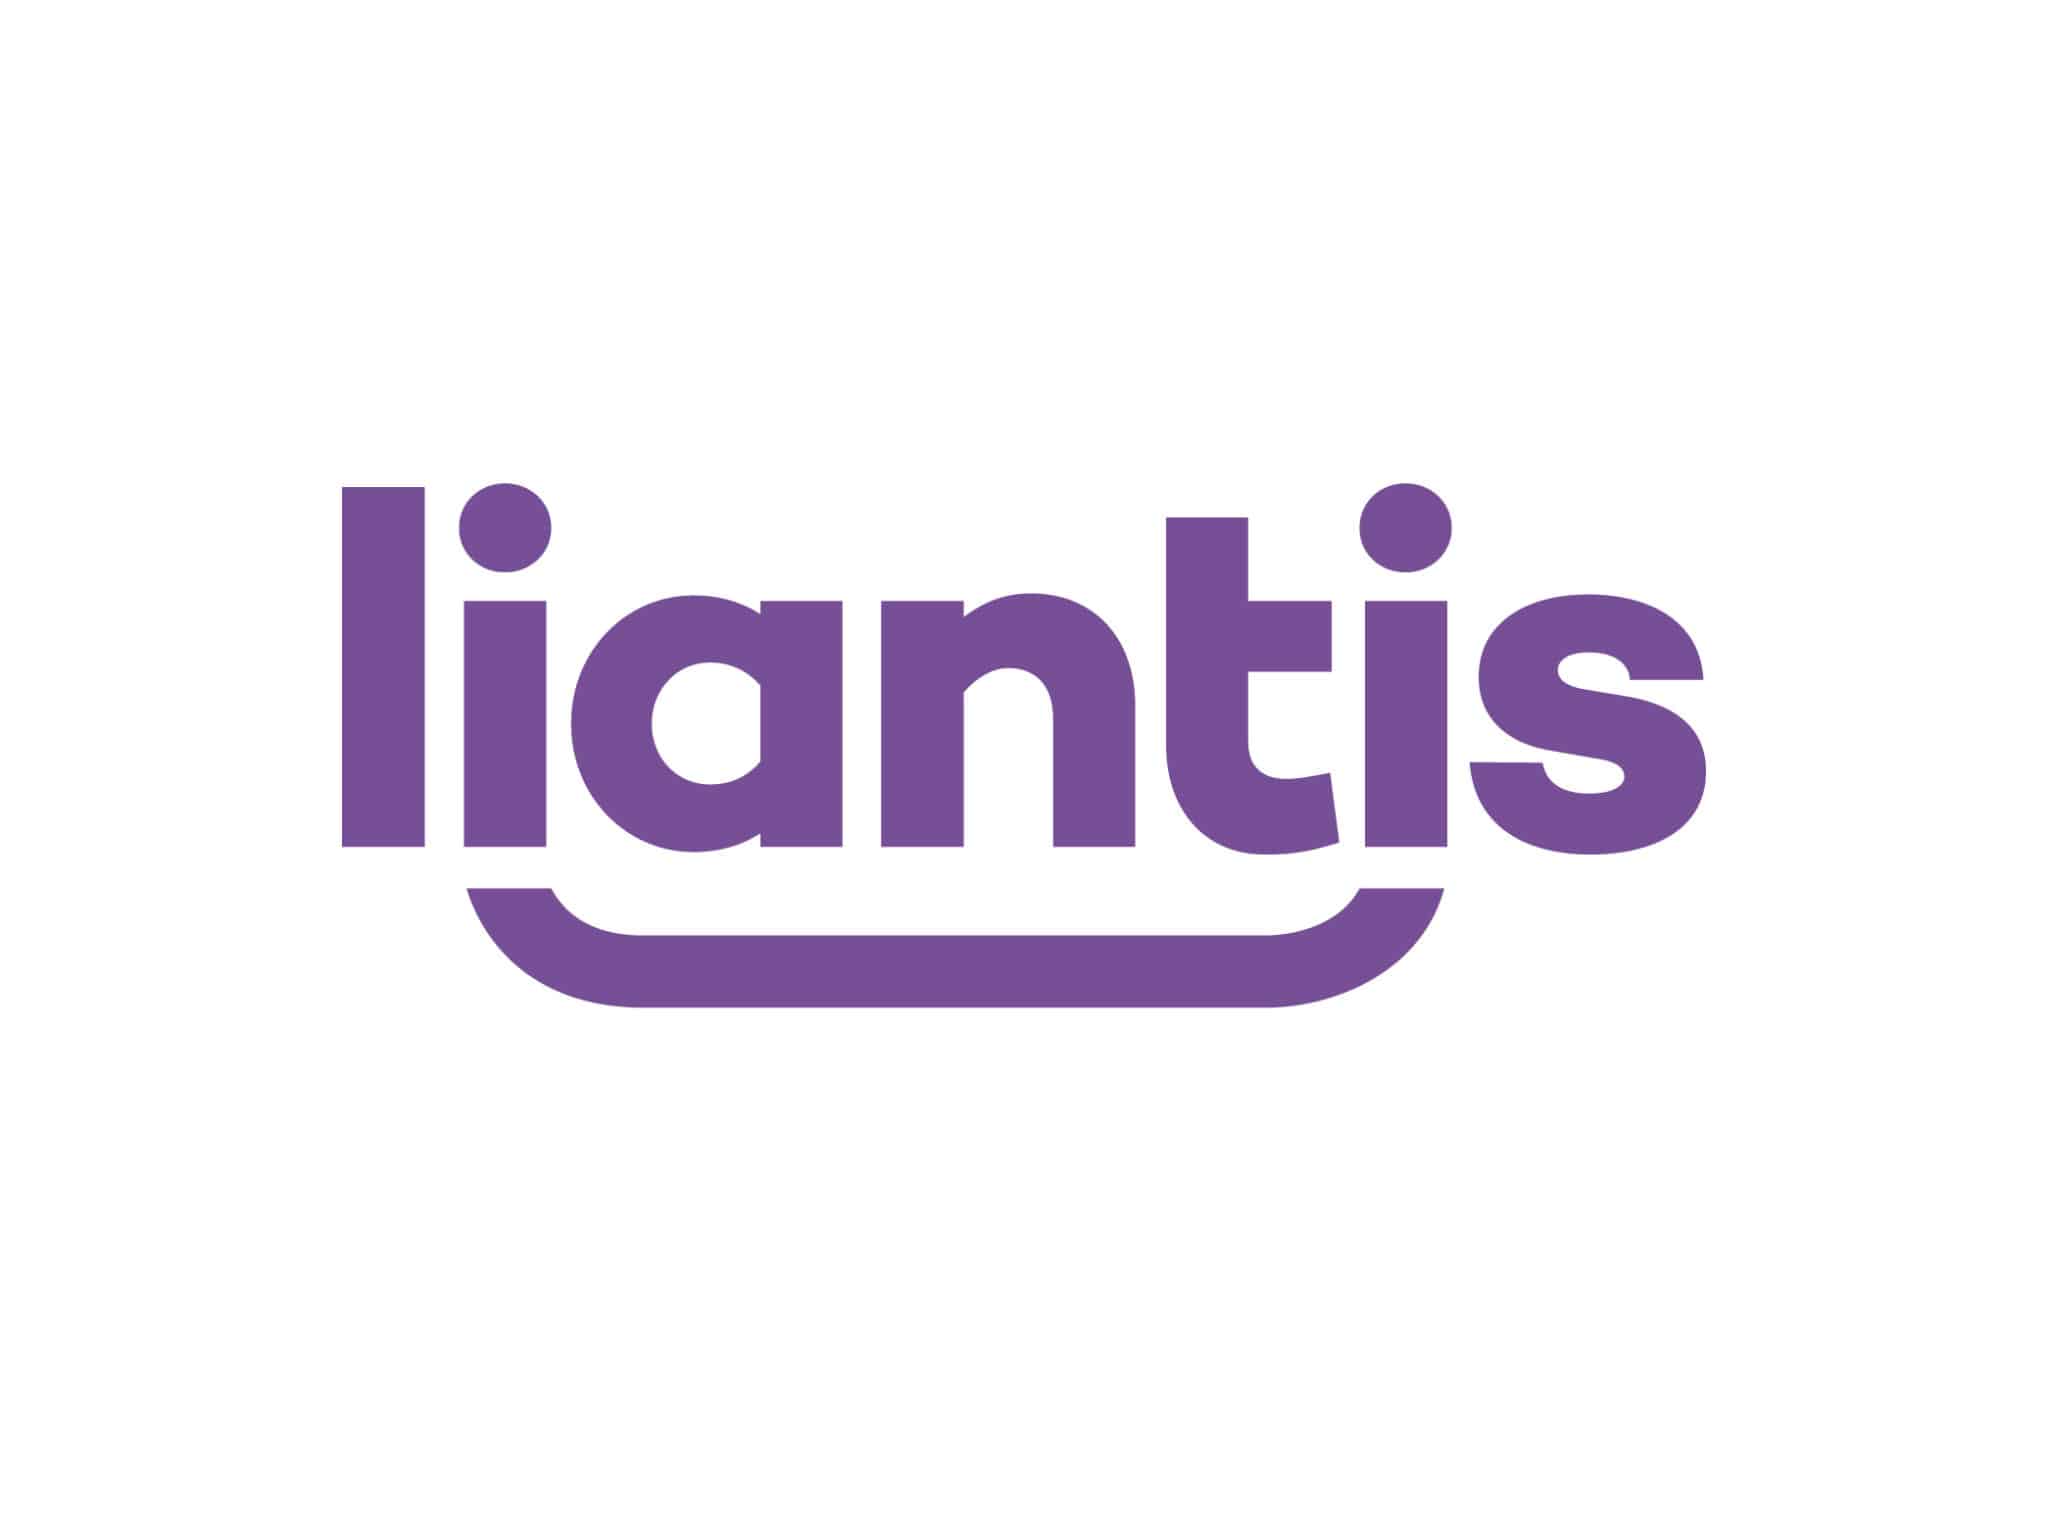 DO! - Liantis 2 scaled